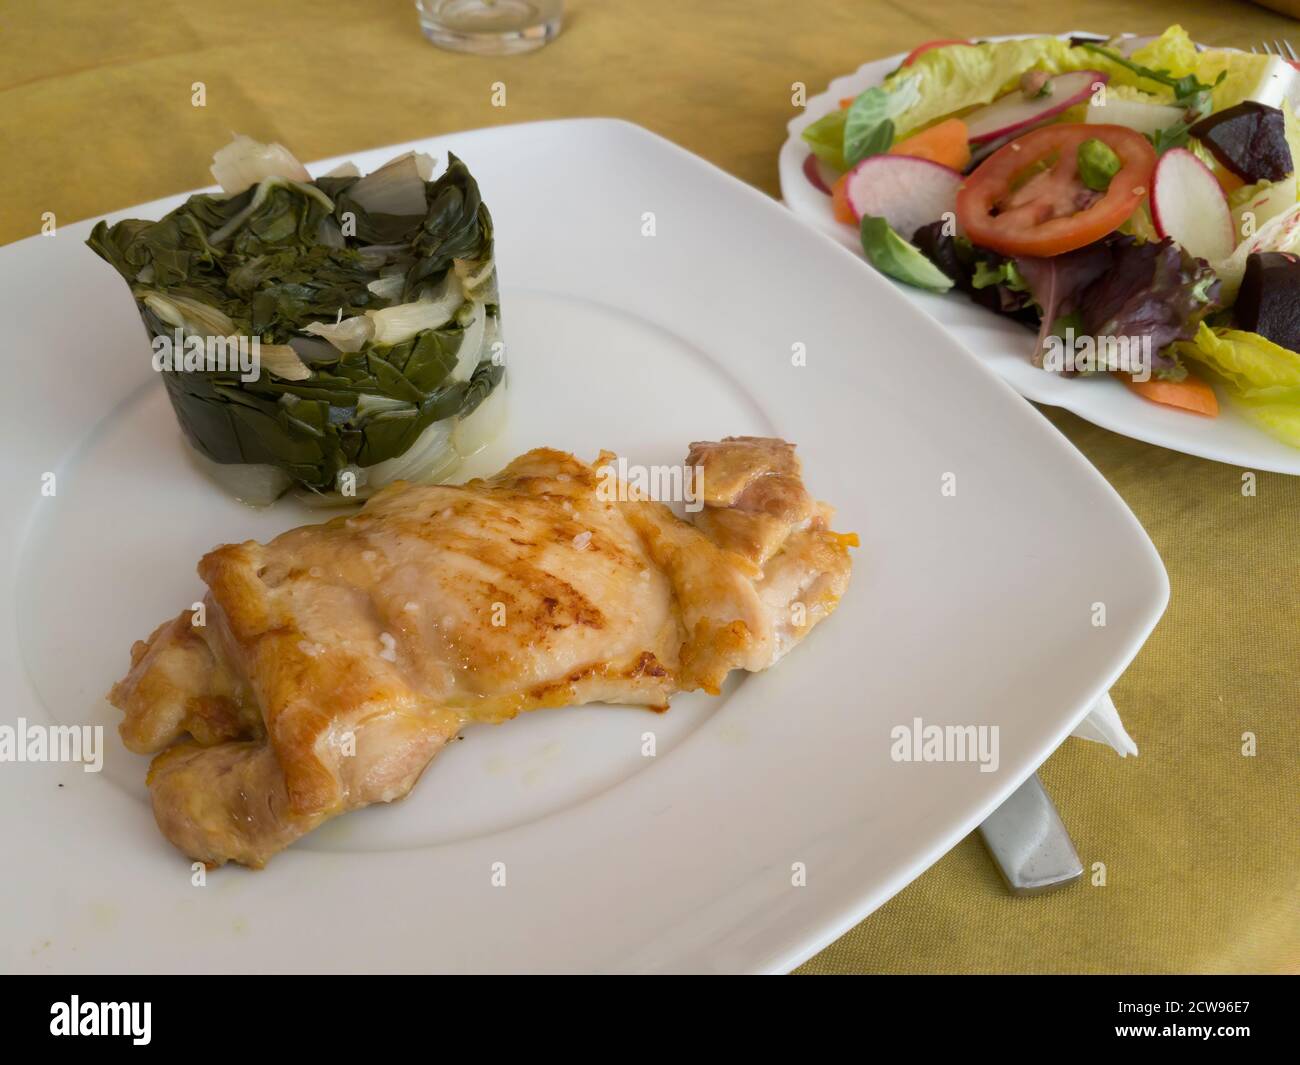 Salade de légumes frais biologiques et poulet grillé garni de poulet suisse cuit à la vapeur. Un repas idéal pour suivre une alimentation saine et équilibrée Banque D'Images